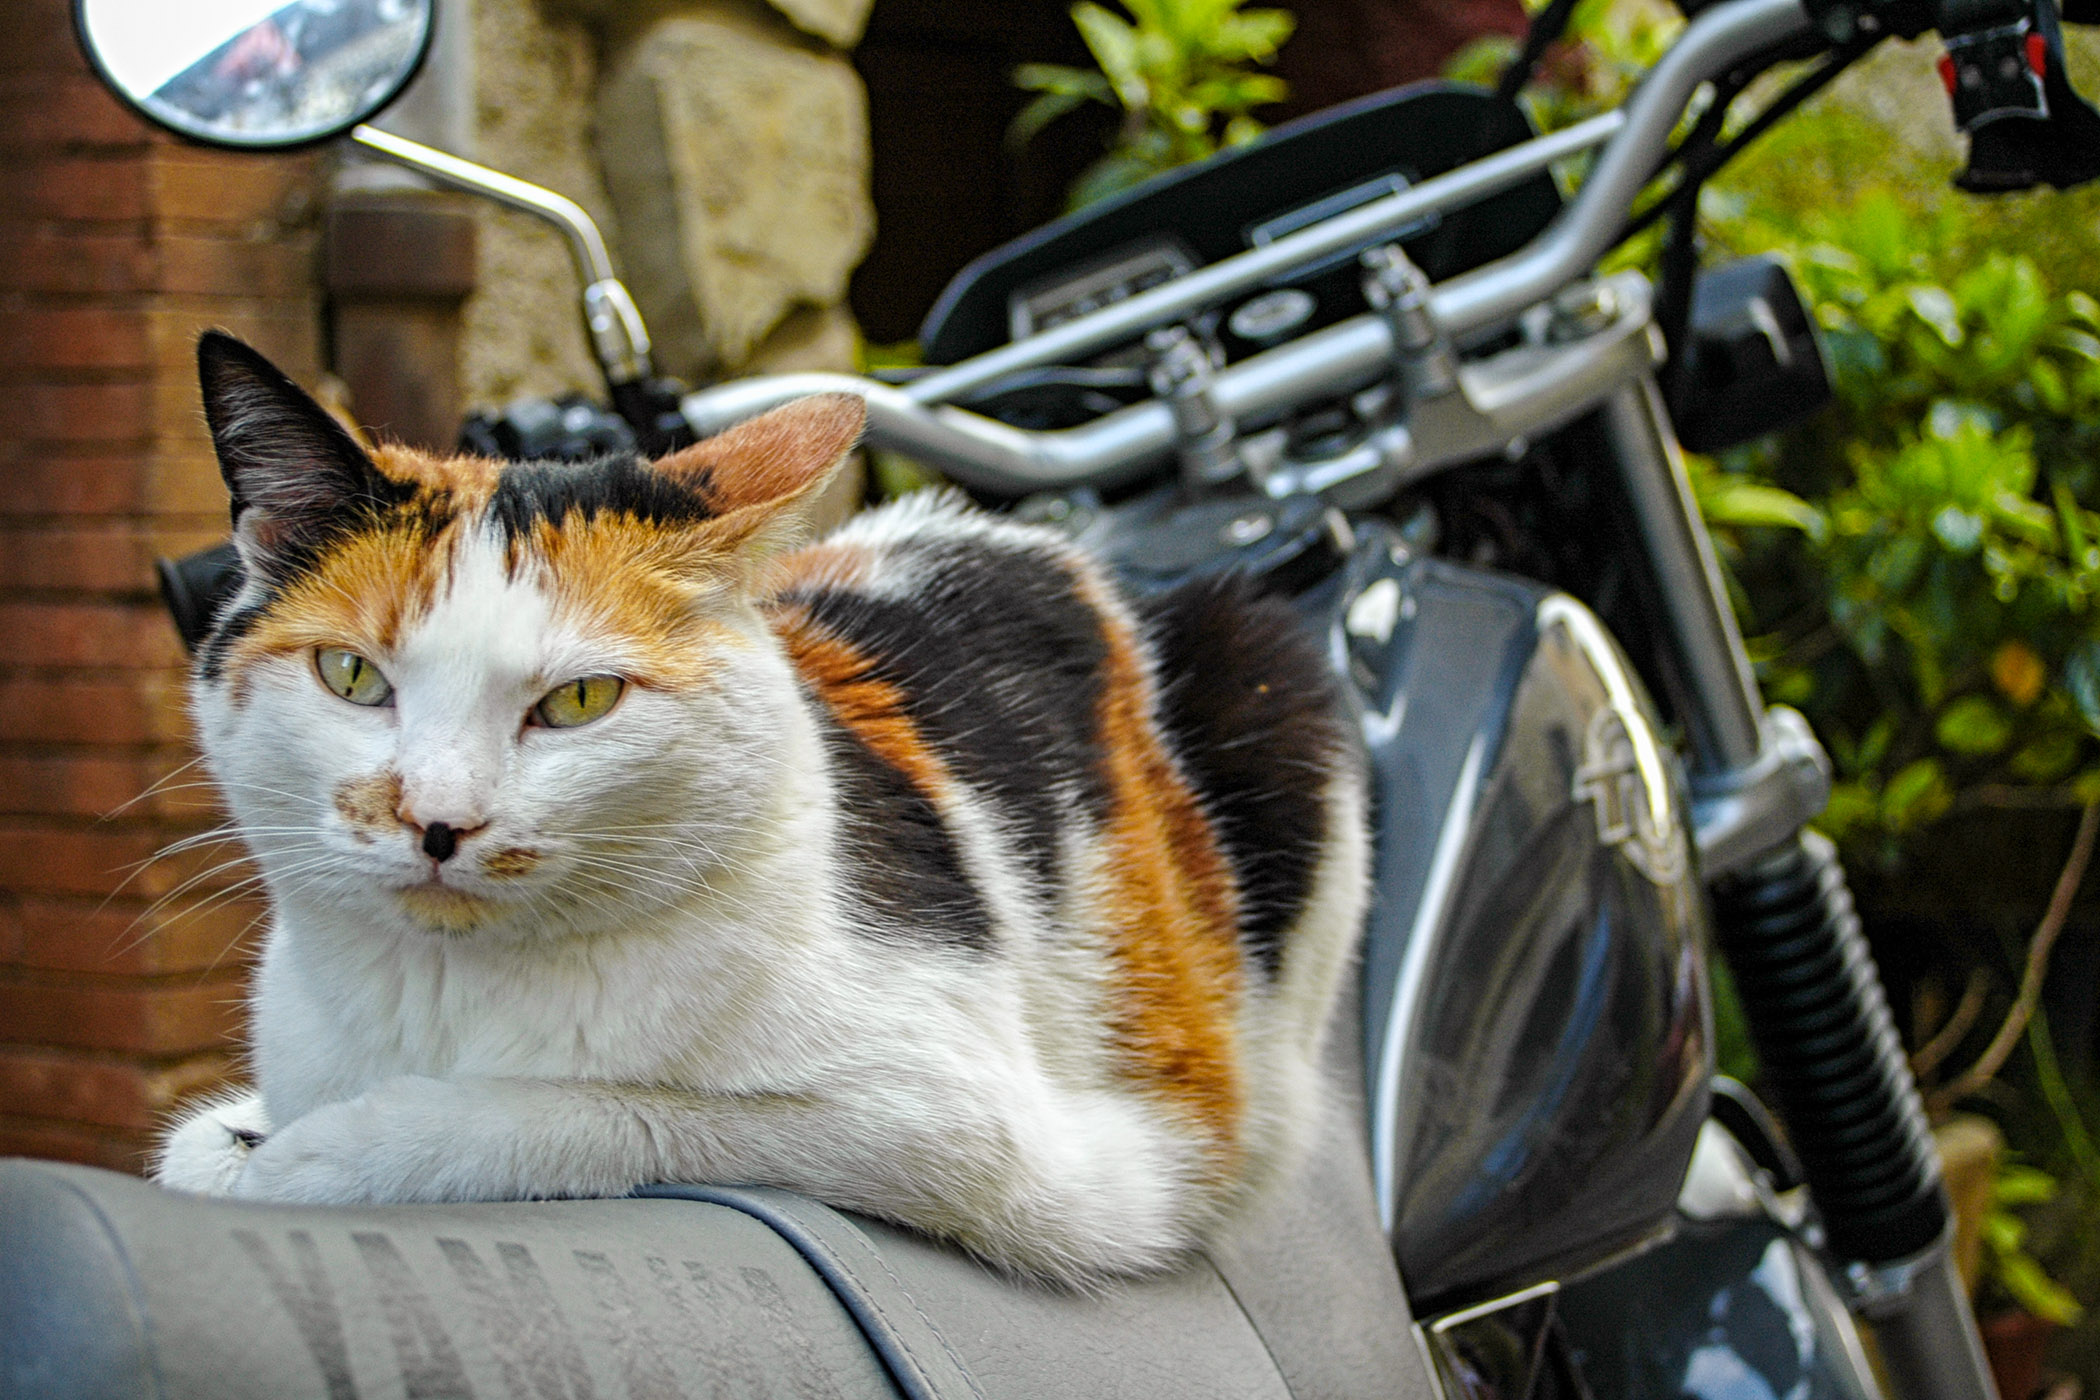 A pretty relaxed Valbonne biker cat